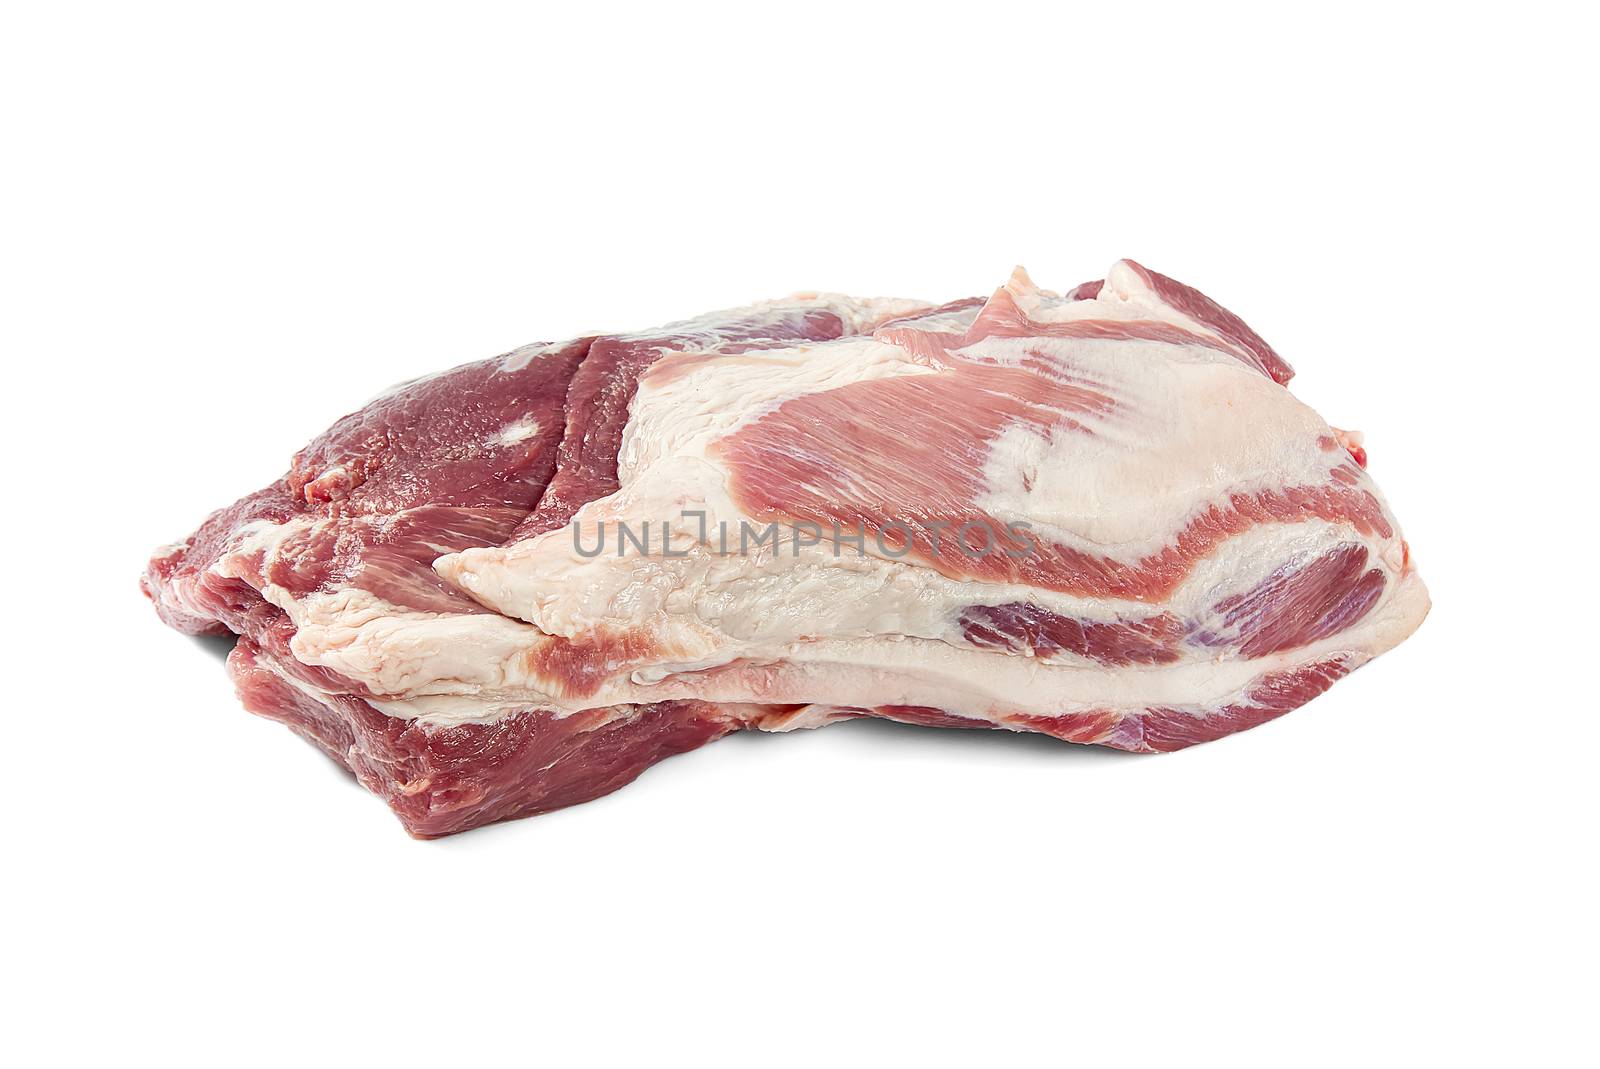 Fresh raw pork neck meat isolated on white background. Pork belly on a white background. Raw pork neck boneless, close-up, isolated. by PhotoTime